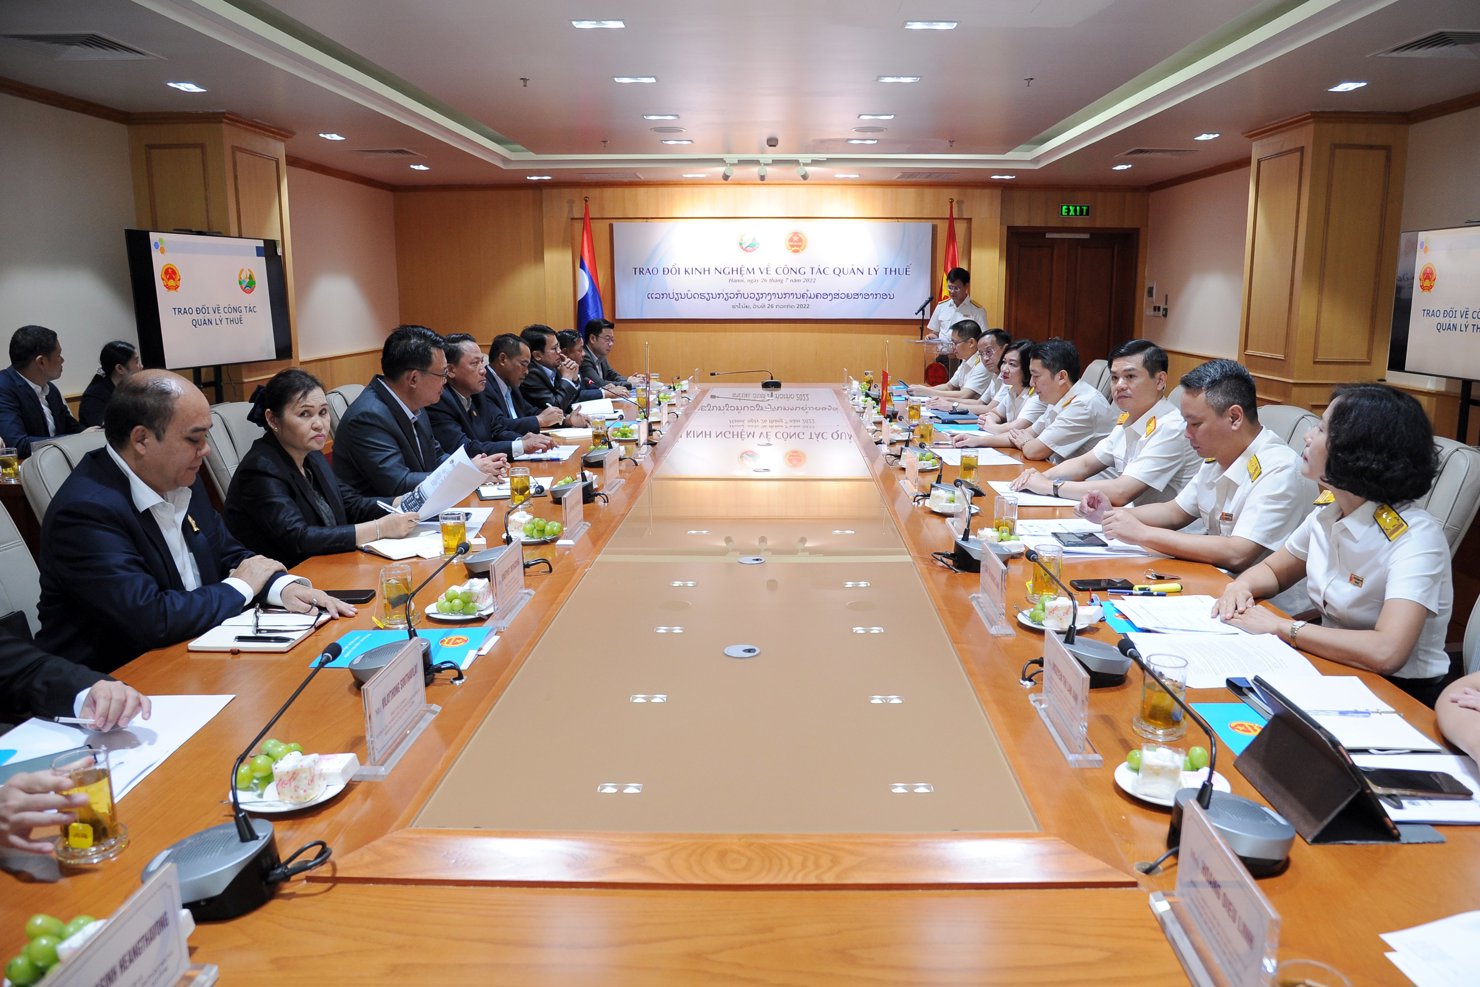 Tổng cục trưởng Cao Anh Tuấn và Bộ trưởng Bộ Tài chính Lào Bounchom Ubonpaseuth cùng lãnh đạo các đơn vị chức năng của Bộ Tài chính Lào và Tổng cục Thuế Việt Nam trao đổi kinh nghiệm về công tác quản lý thuế.